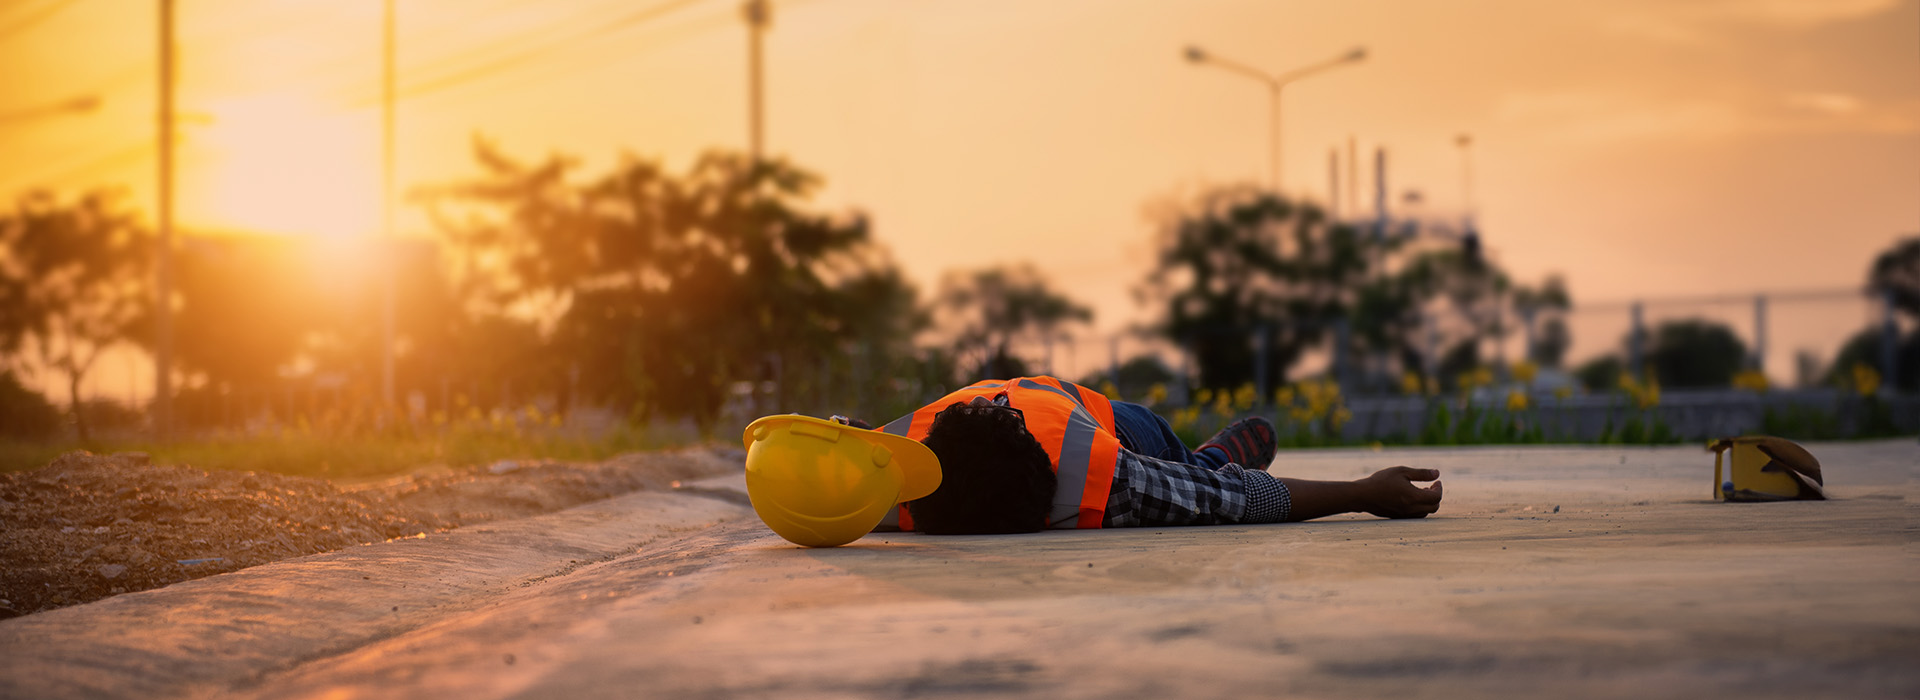 Injured worker on ground